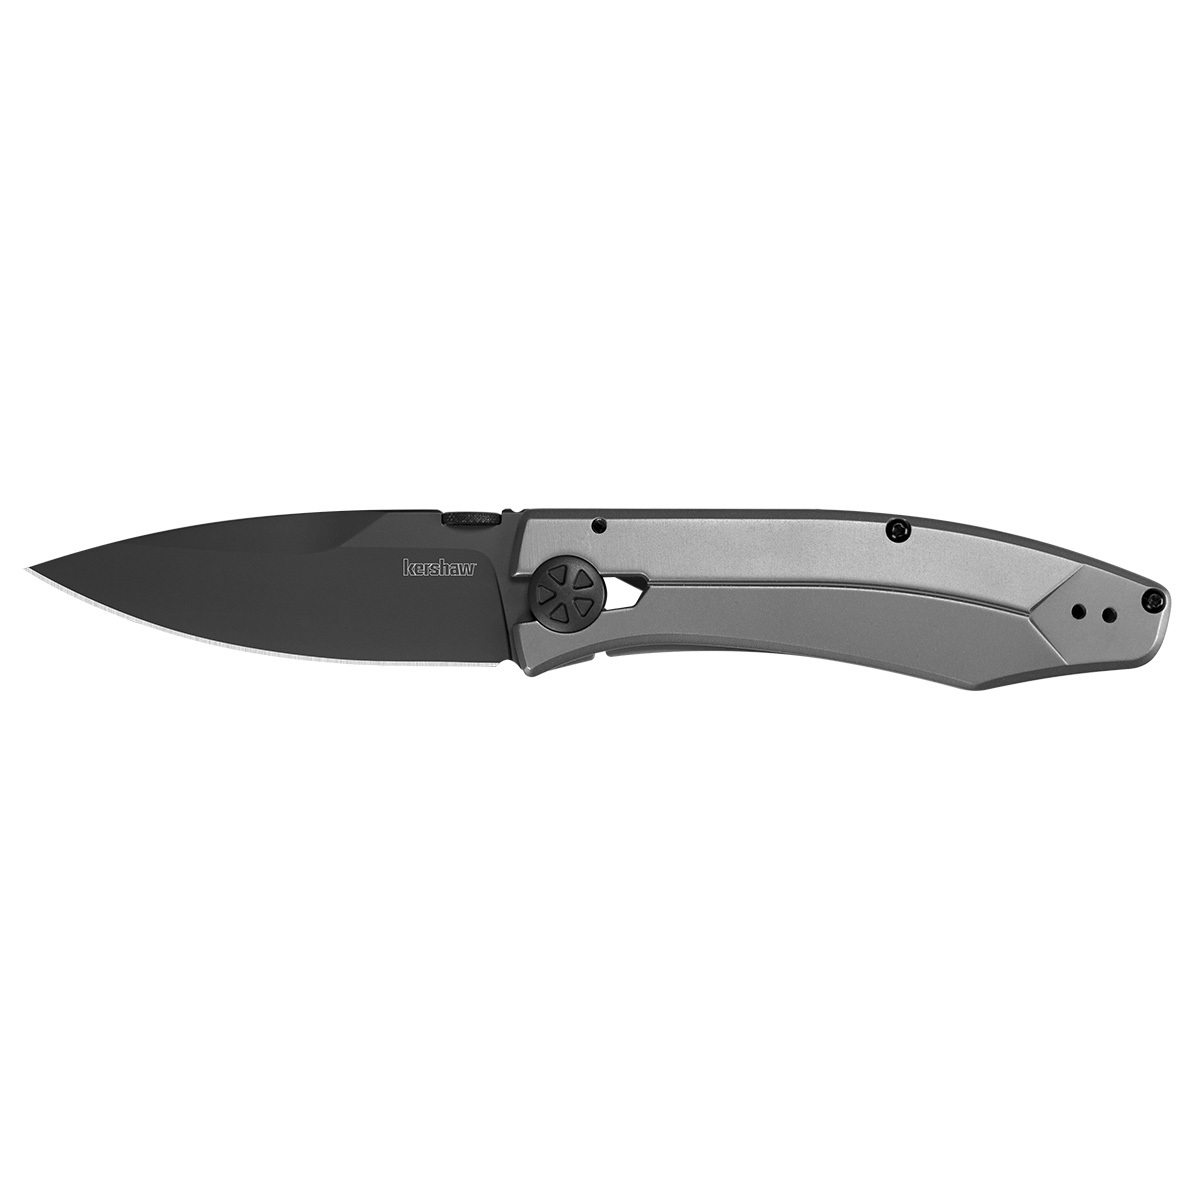 Складной нож Kershaw Innuendo  K3440, сталь 8Cr13MoV набор из 3 х ножей фиксированным клинком crkt fork hunting knife set сталь 8cr13mov цельнометаллические